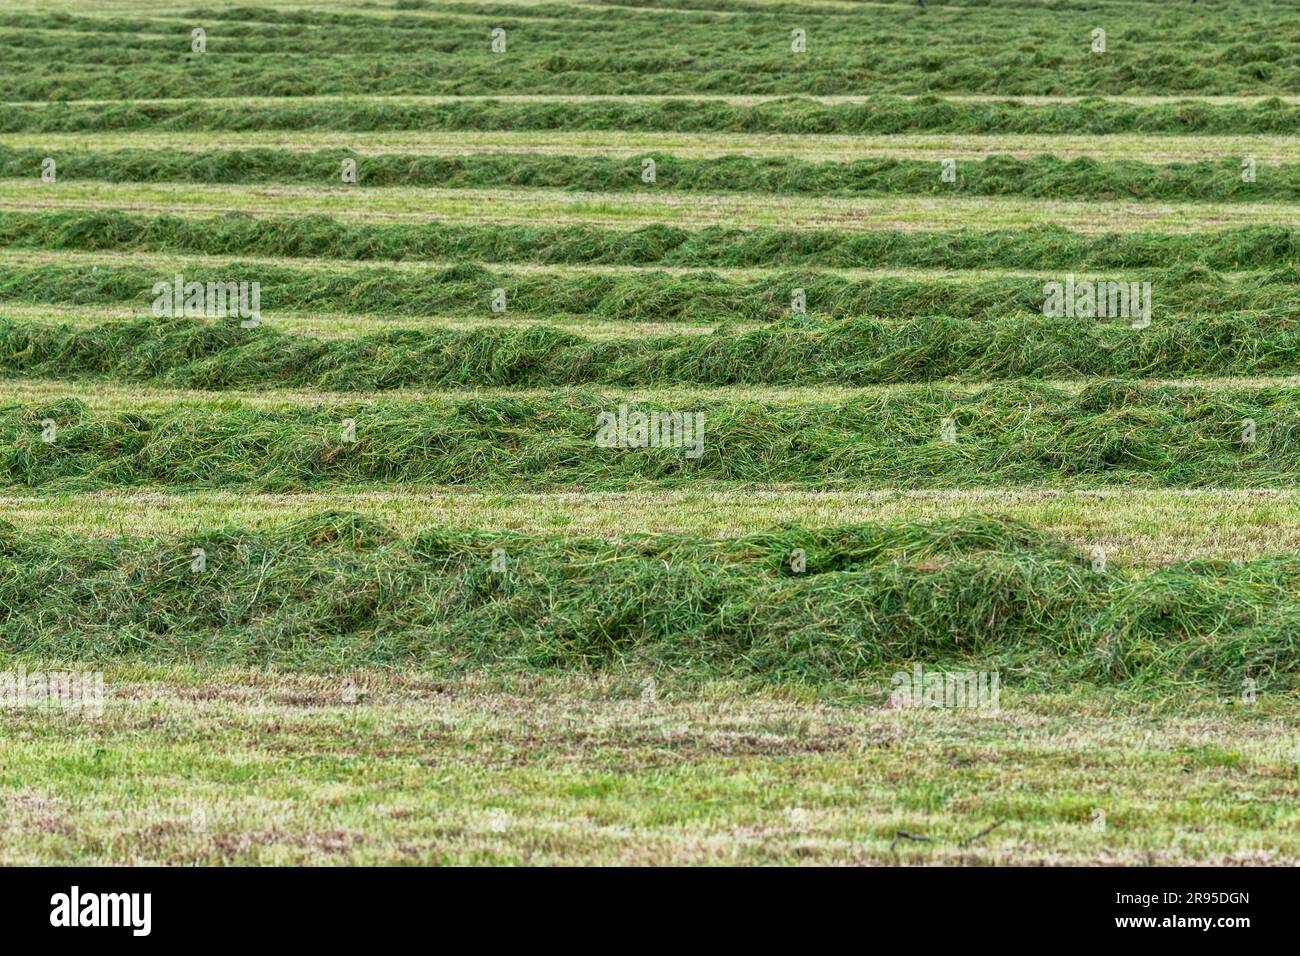 Agriculture : rangées d'ensilage d'herbe en attente de mise en balles/collecte à West Cork, Irlande. Banque D'Images